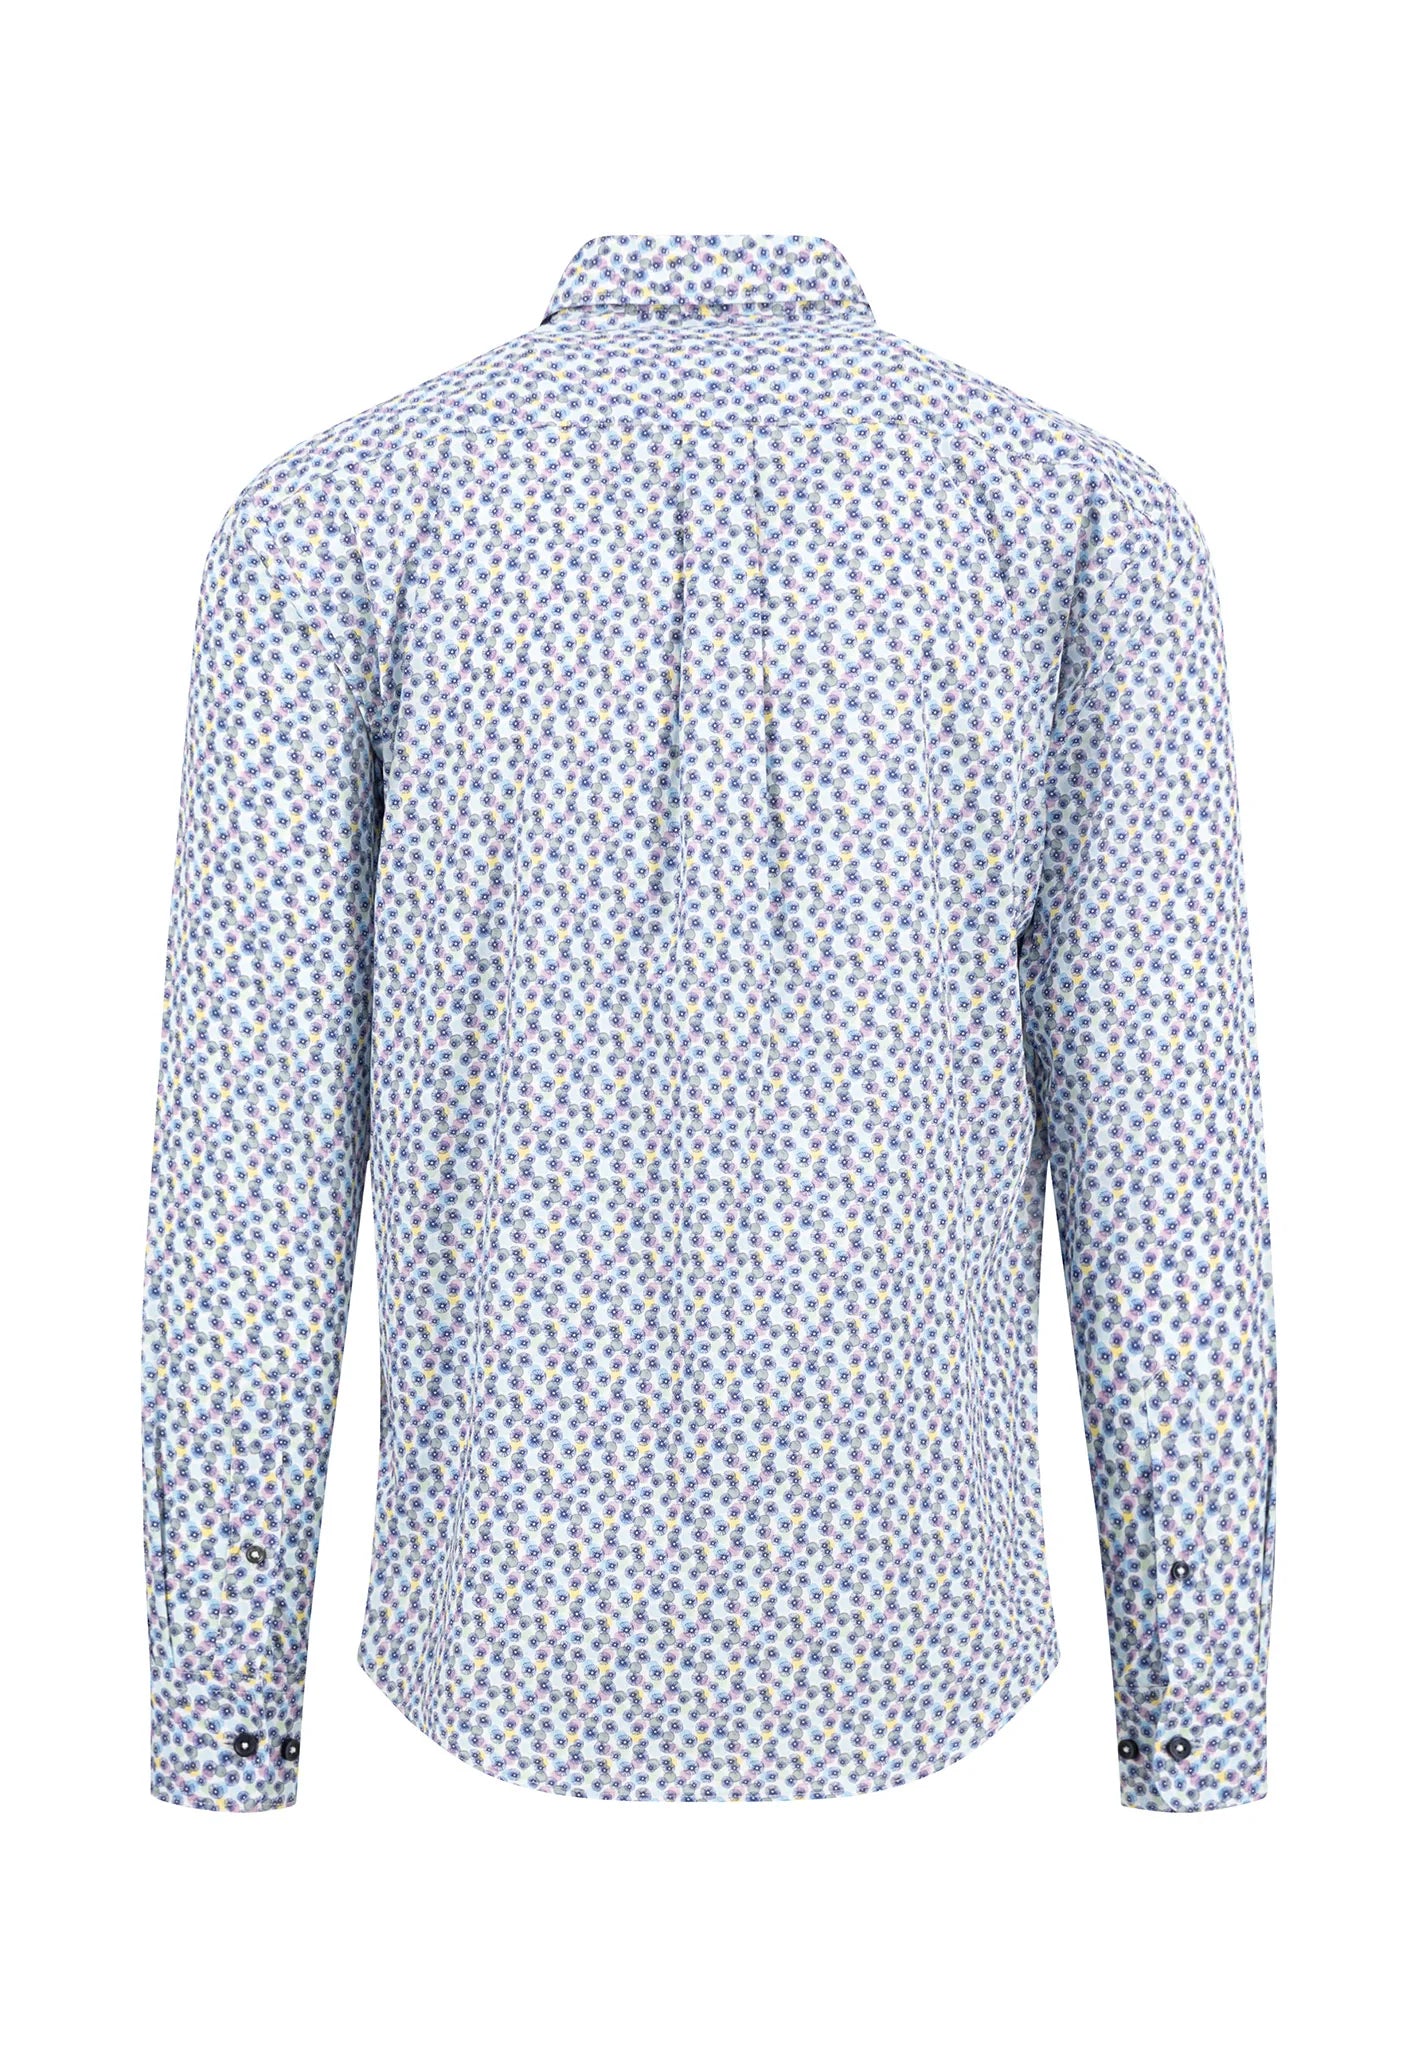 FYNCH HATTON Floral Print Shirt - Men's Soft Cotton – Dusty Lavender